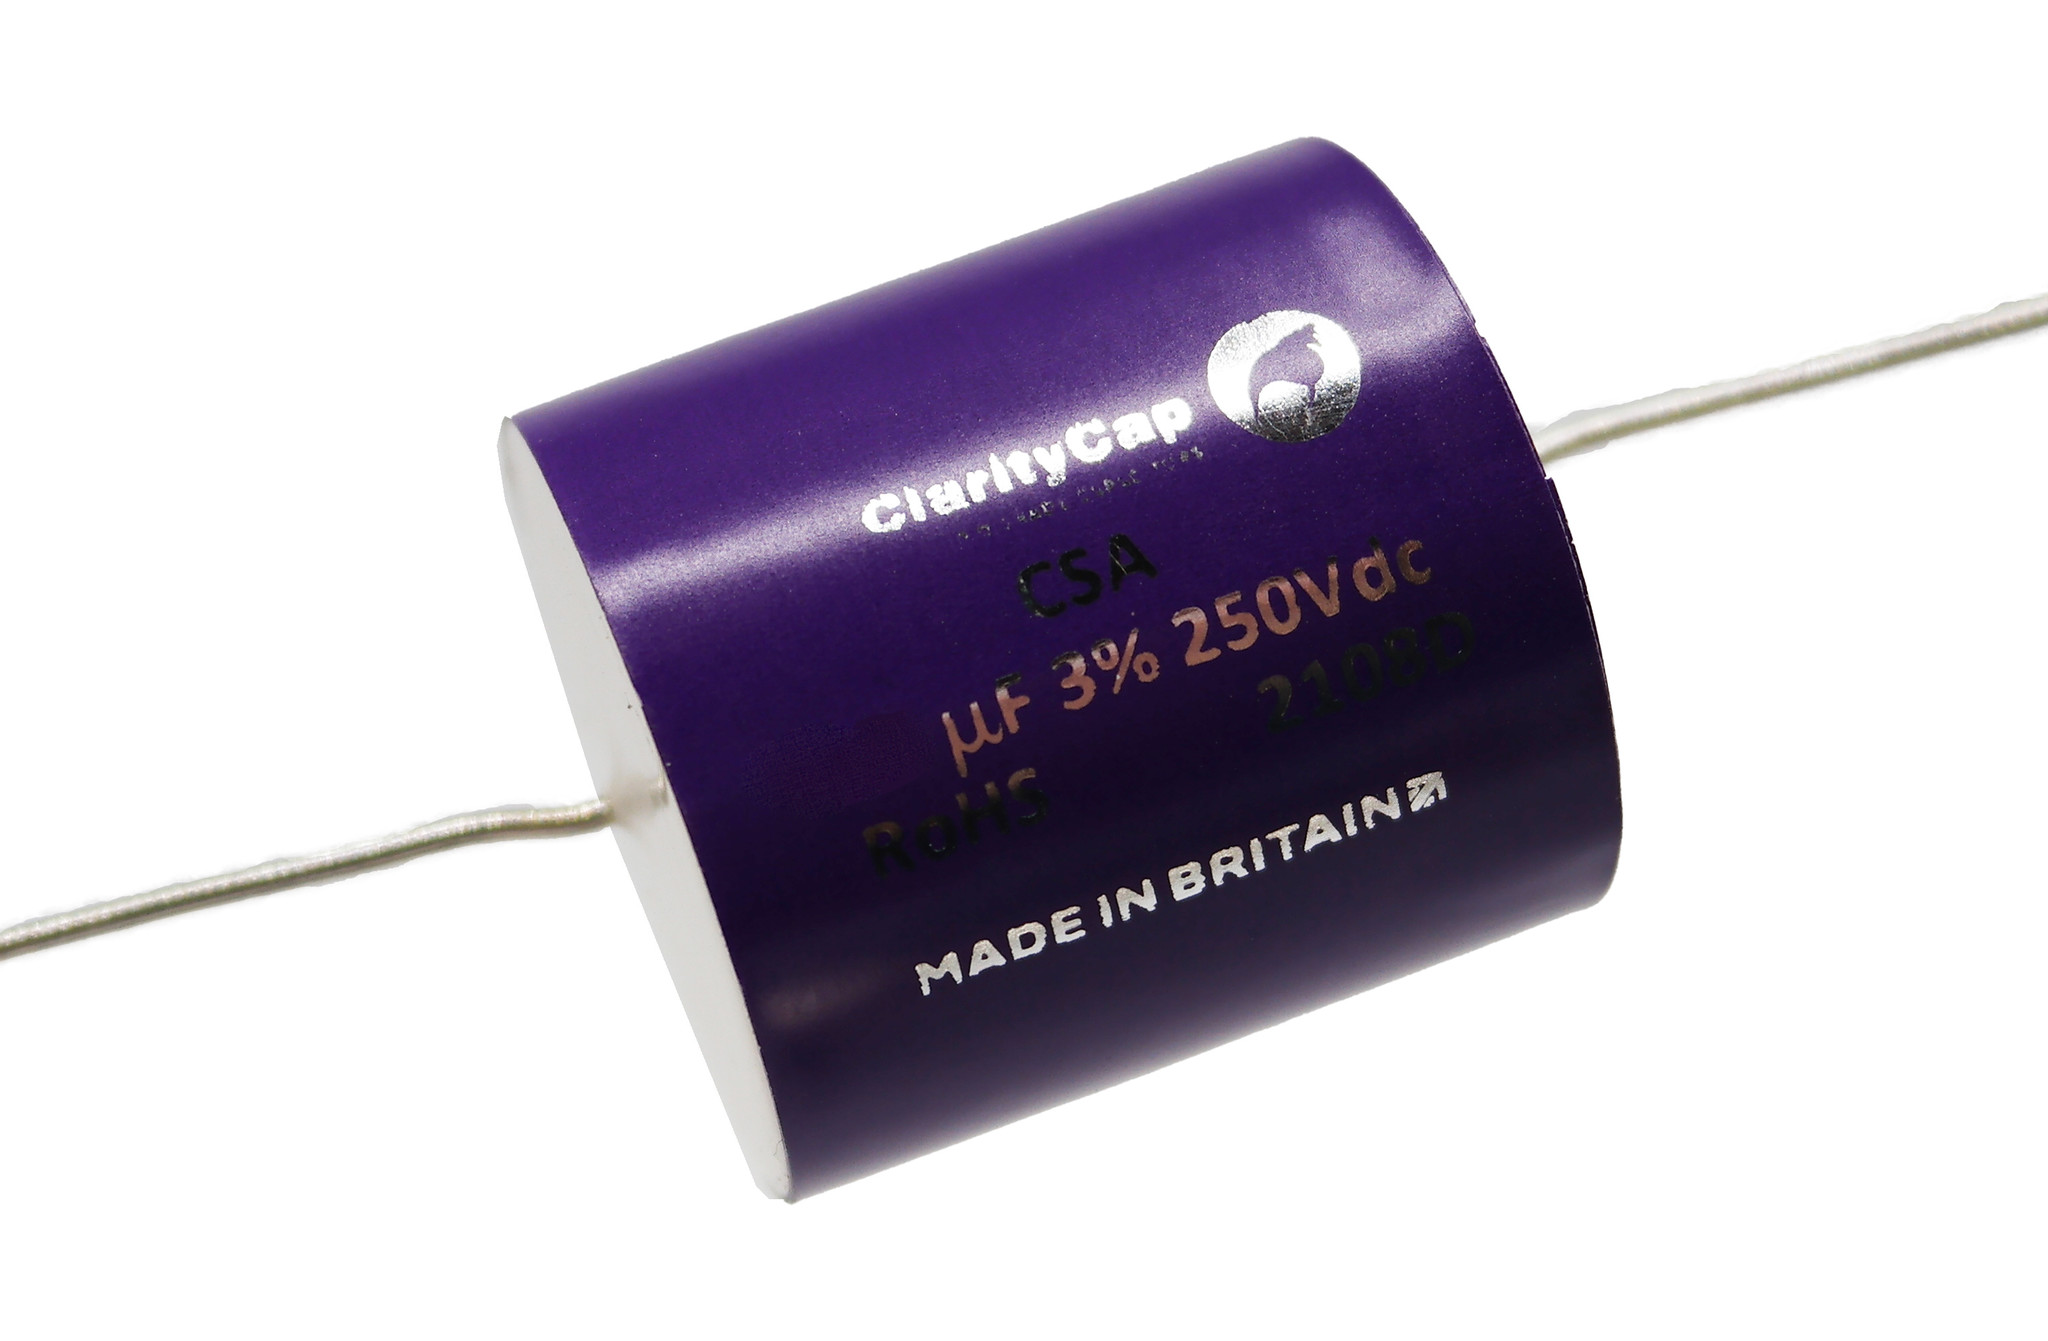 Condensatoare - Condensator film ClarityCap CSA5u6H250Vdc | 5.6 µF | 3% | 250 V, audioclub.ro